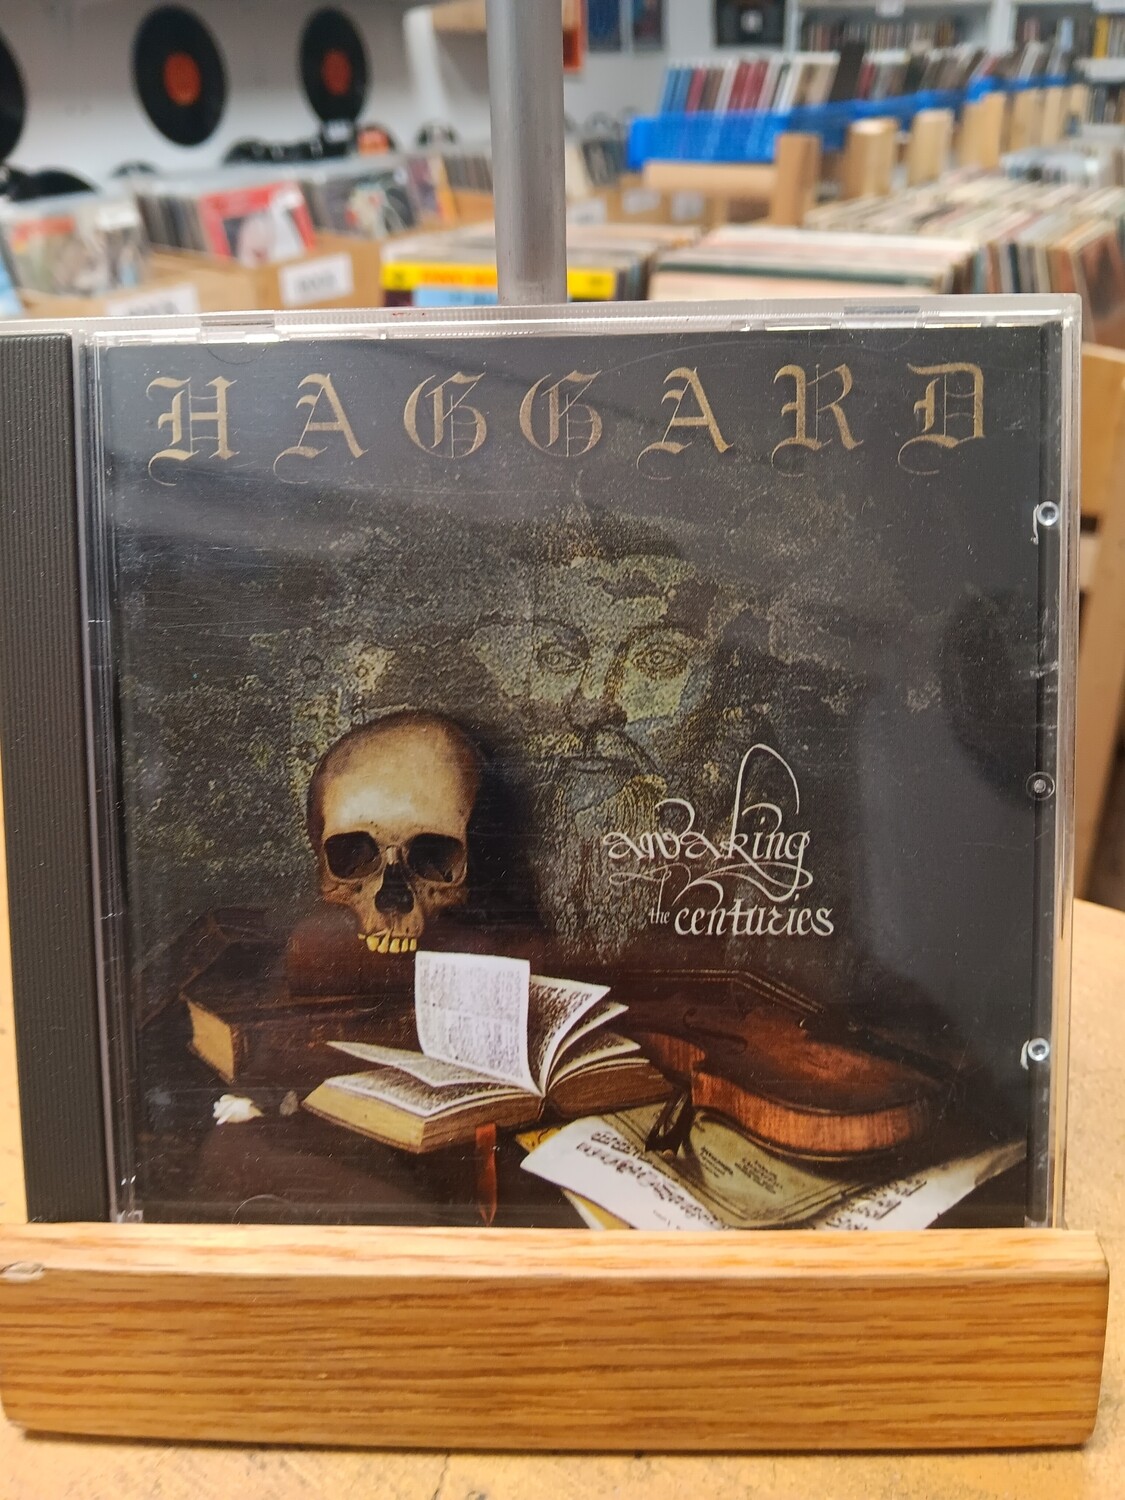 HAGGARÐ - Awaiking the centuries (CD)